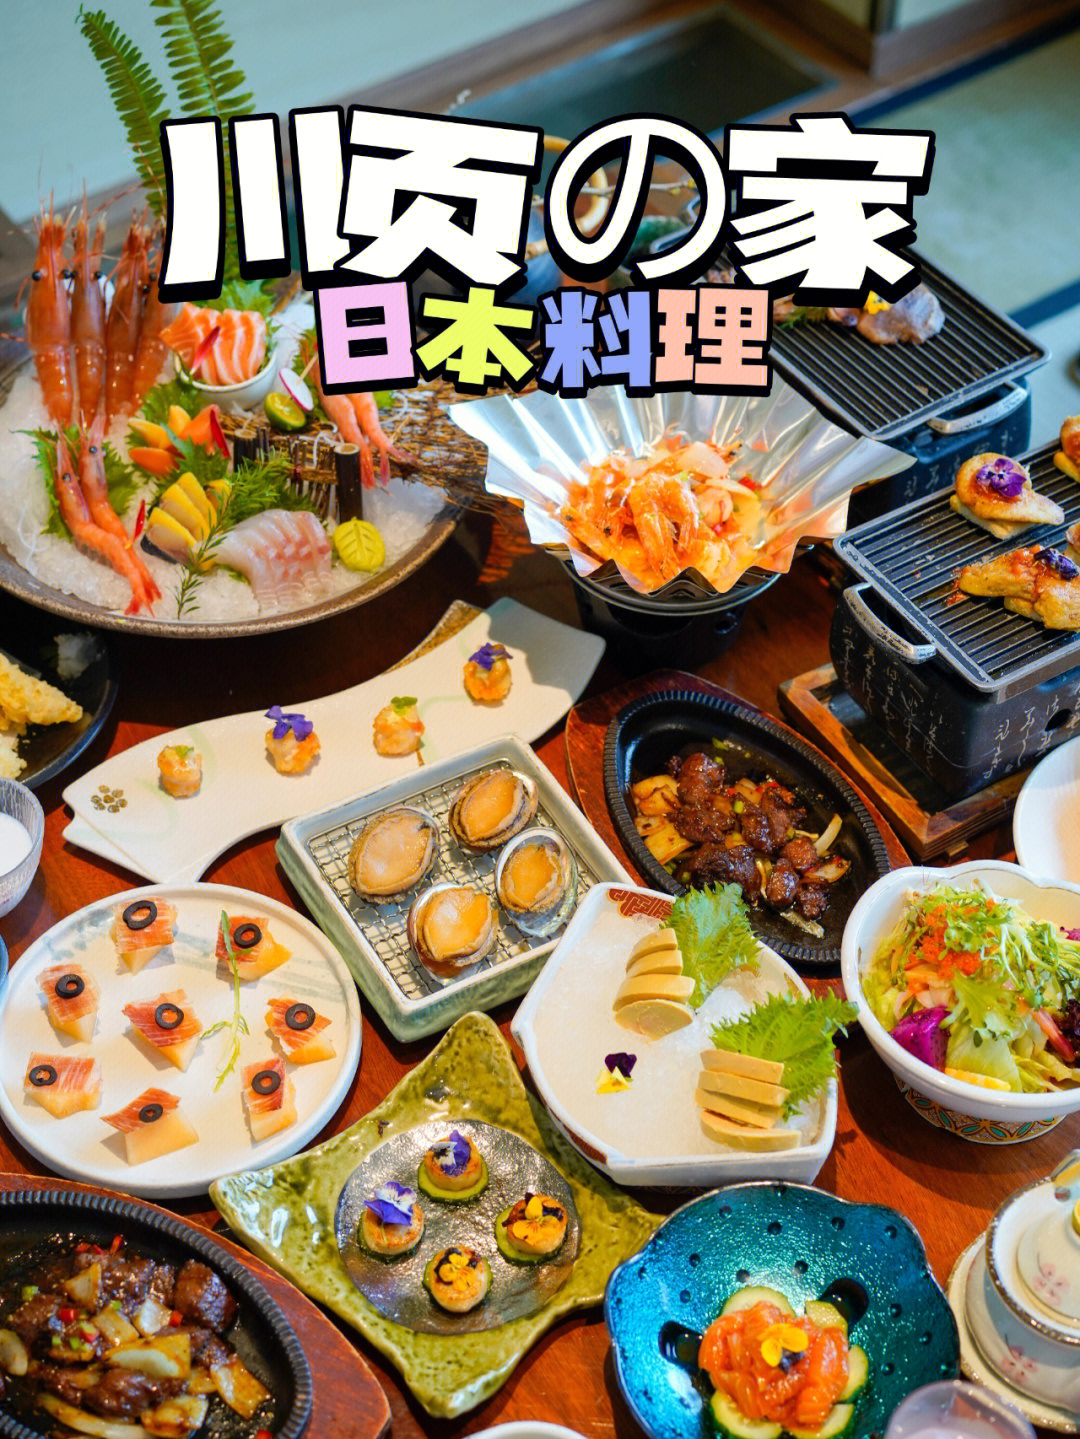 德川家日本料理价目表图片